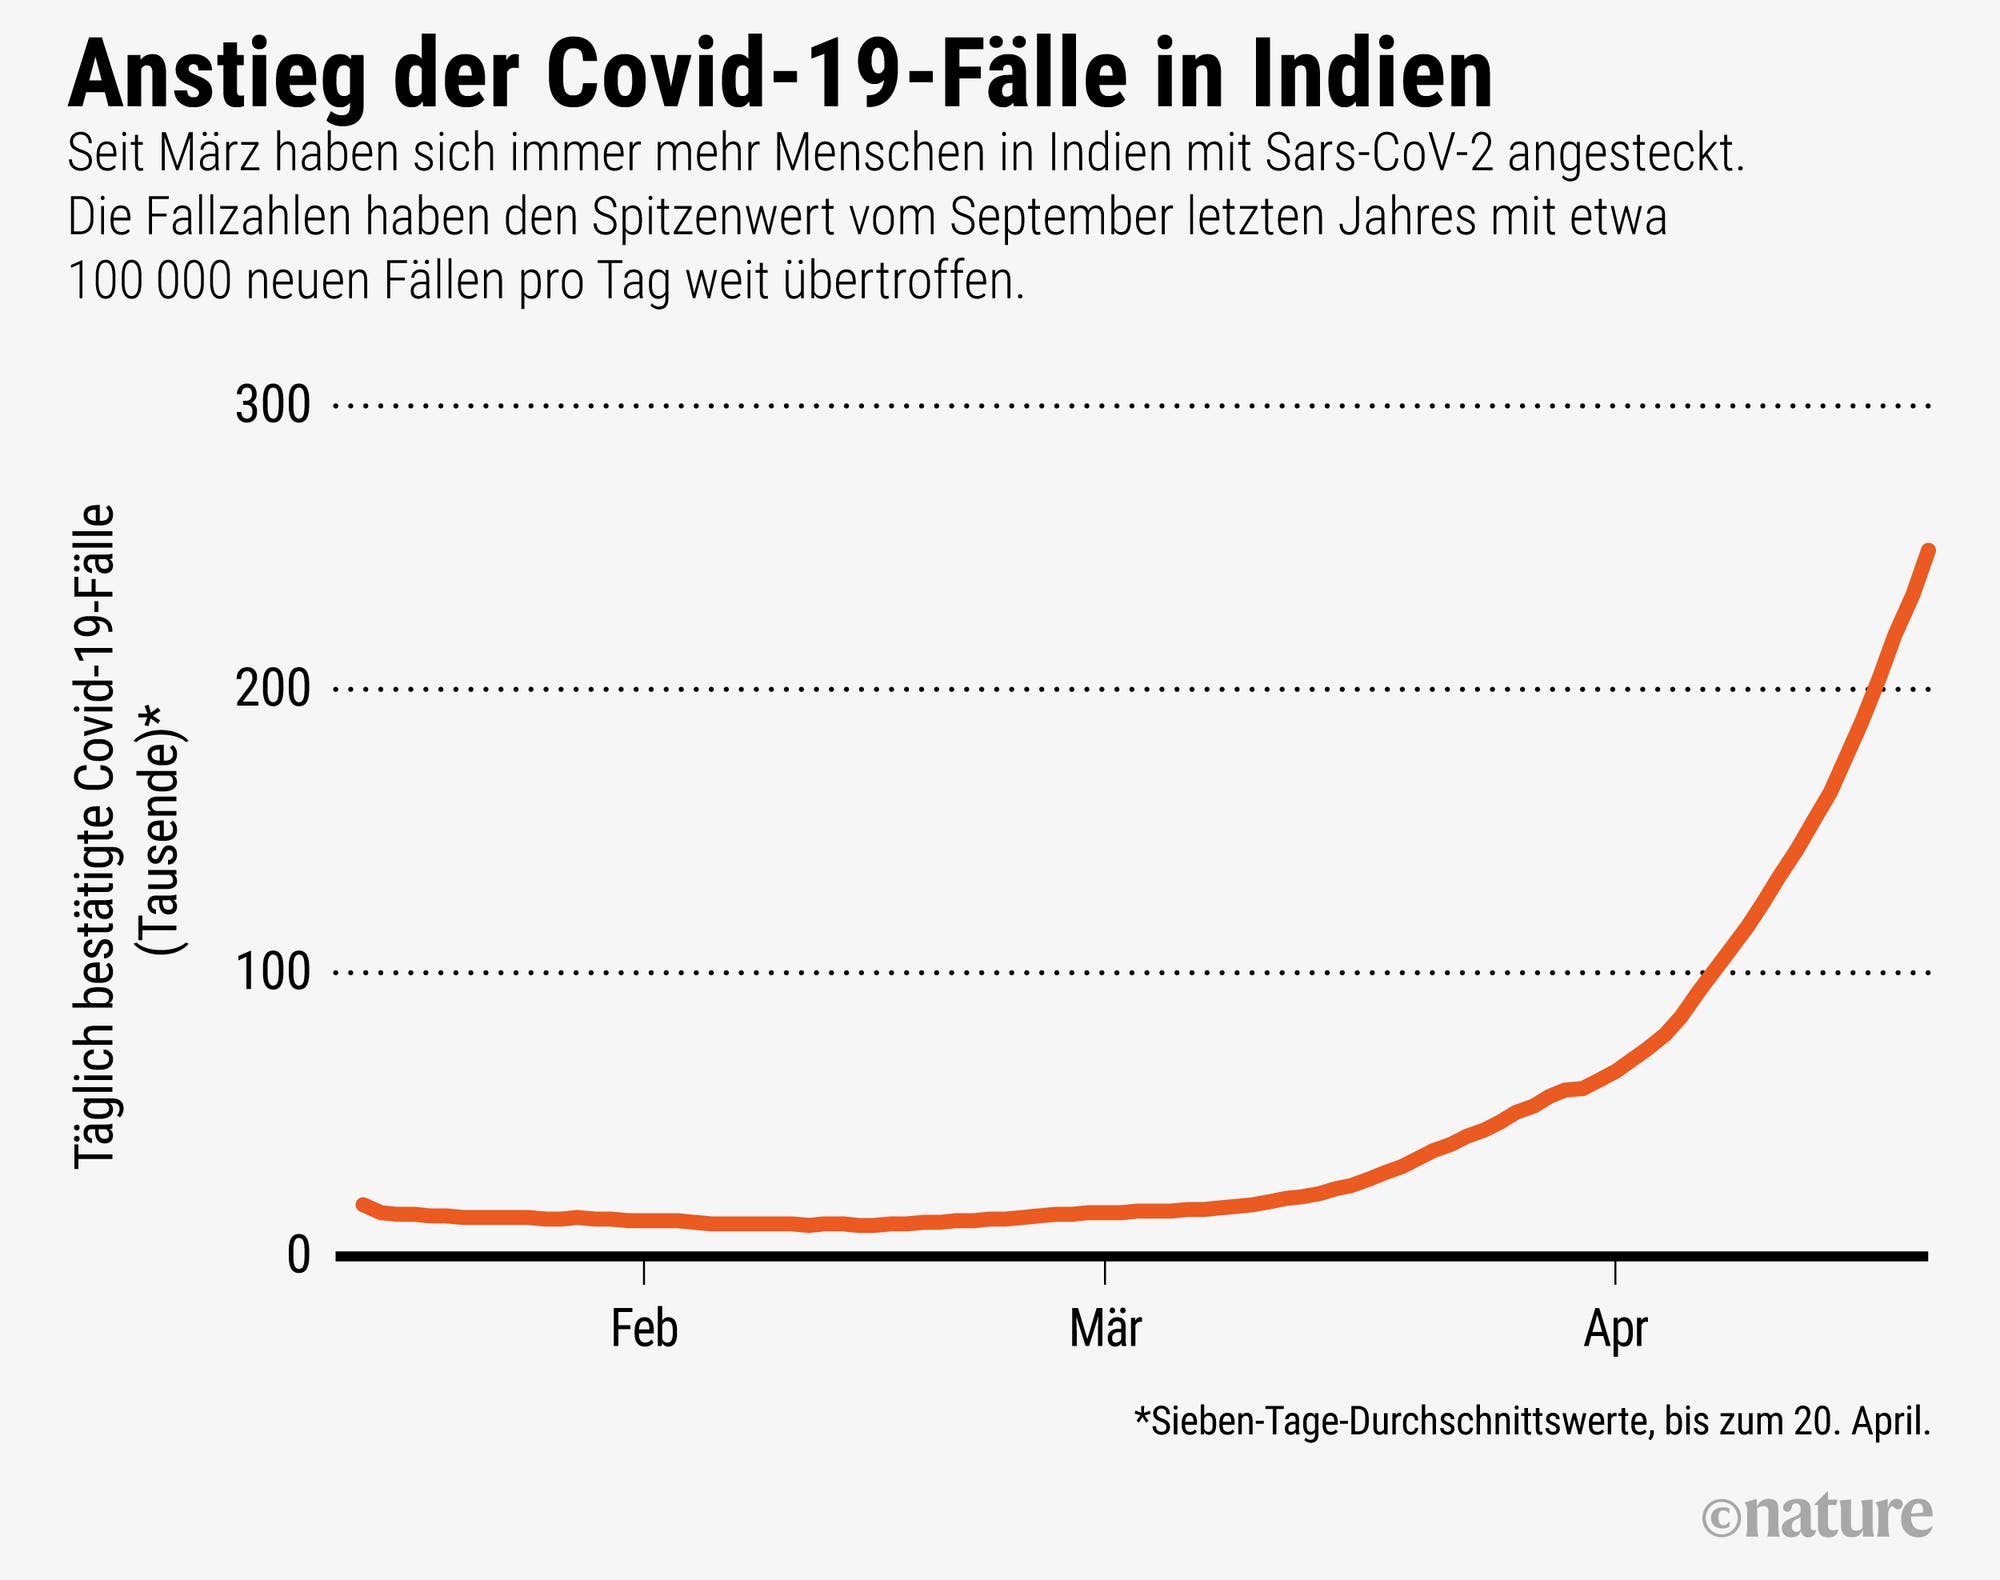 Seit März steigt die Zahl der Menschen, die sich mit Sars-CoV-2 anstecken, rapide an, wie die Grafik zeigt.